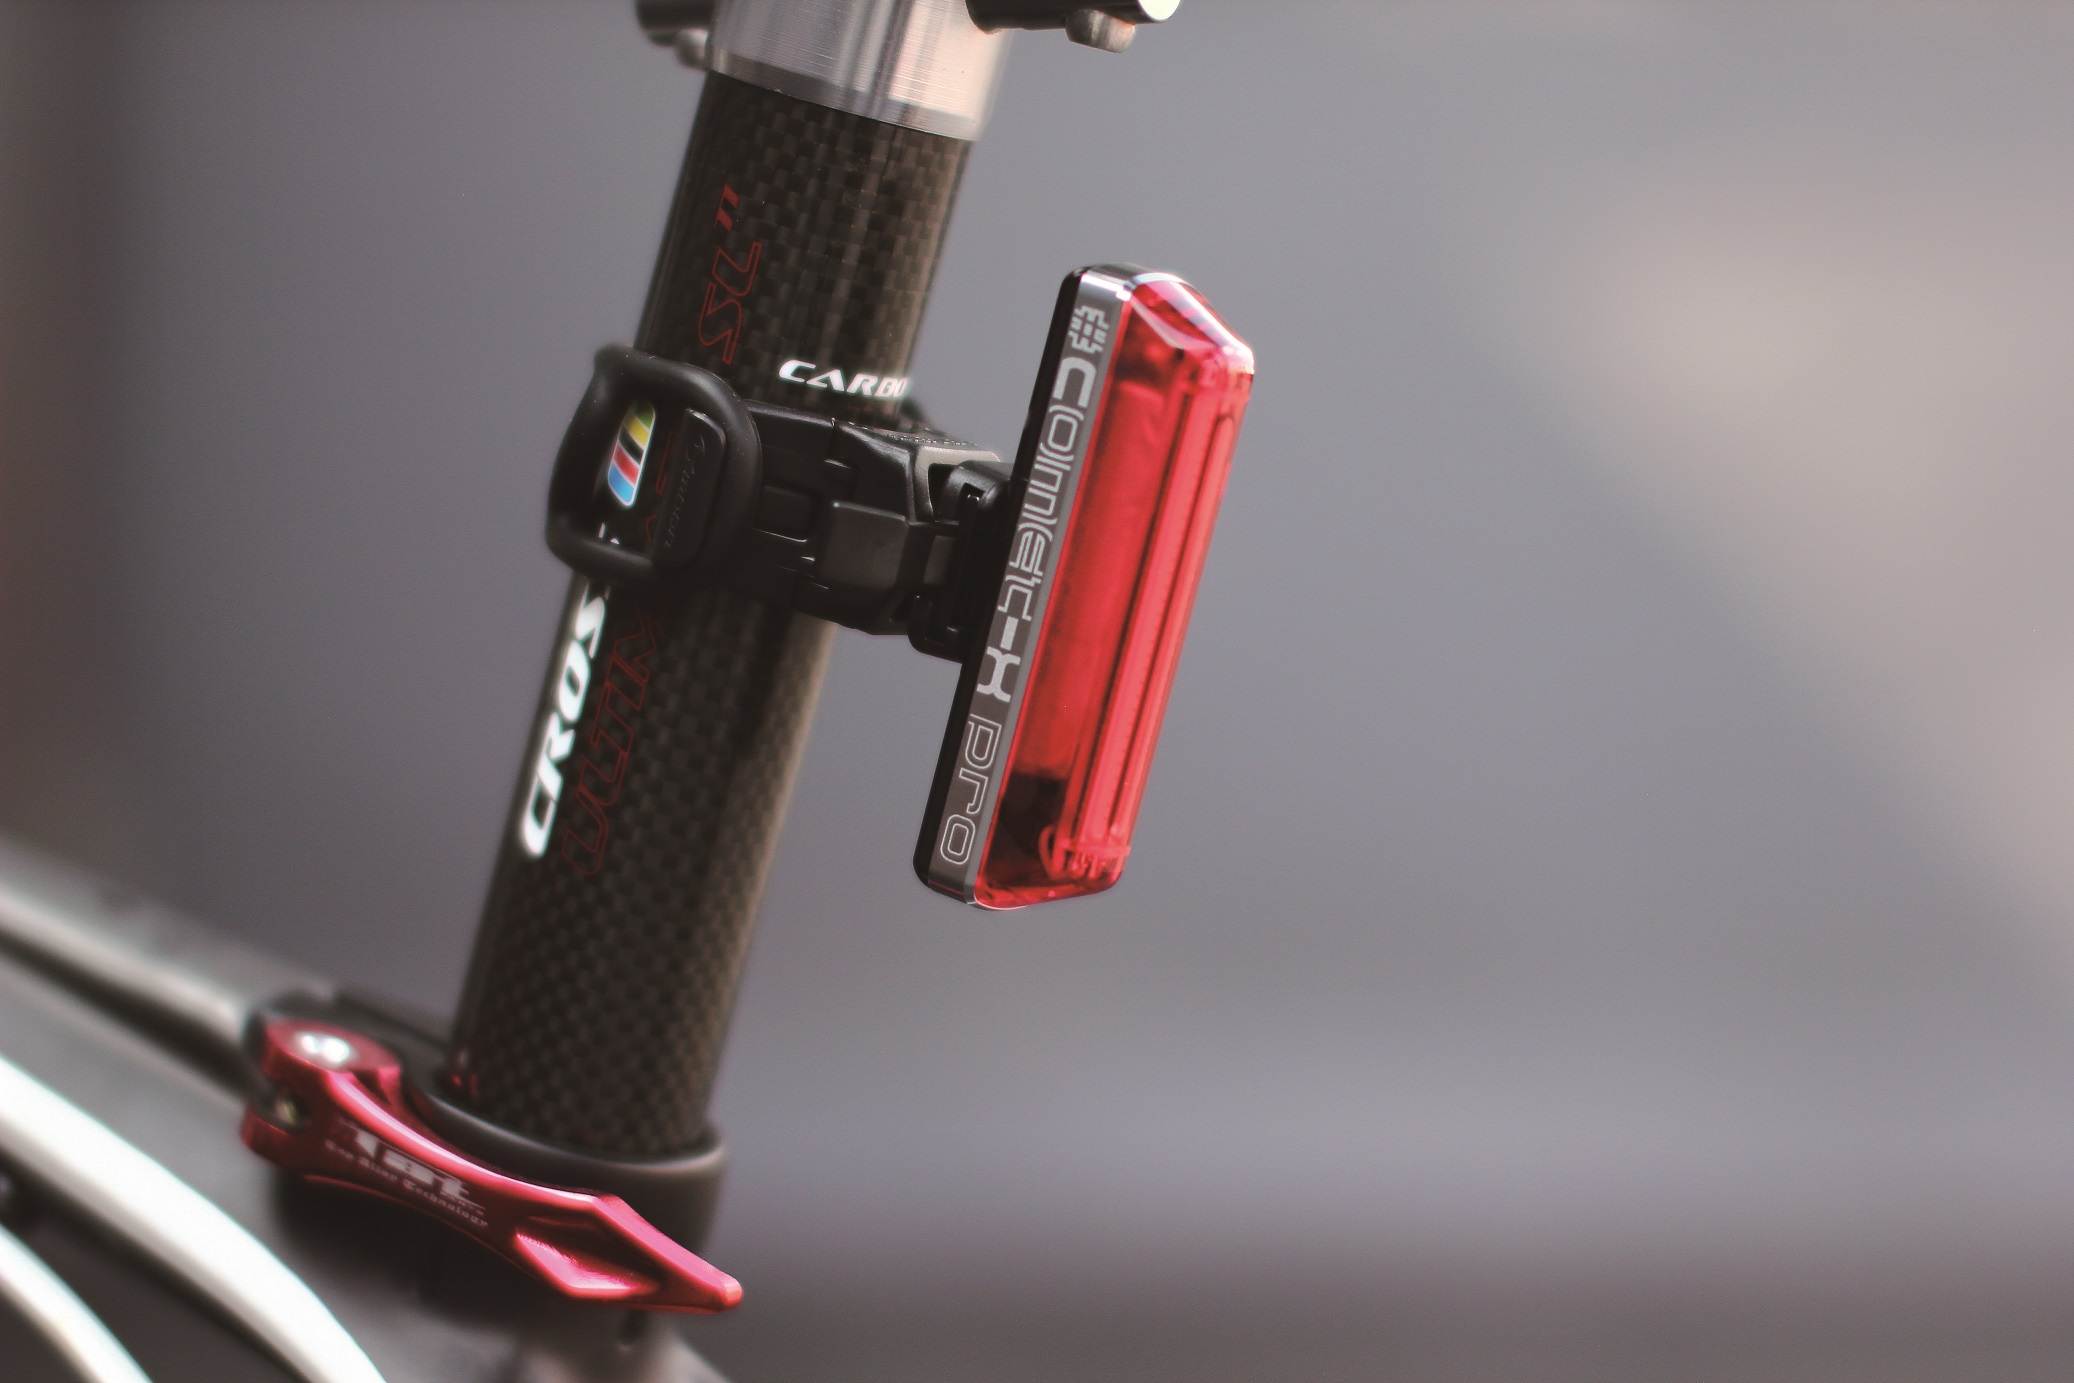  Задний фонарь для велосипеда Moon Comet-X USB